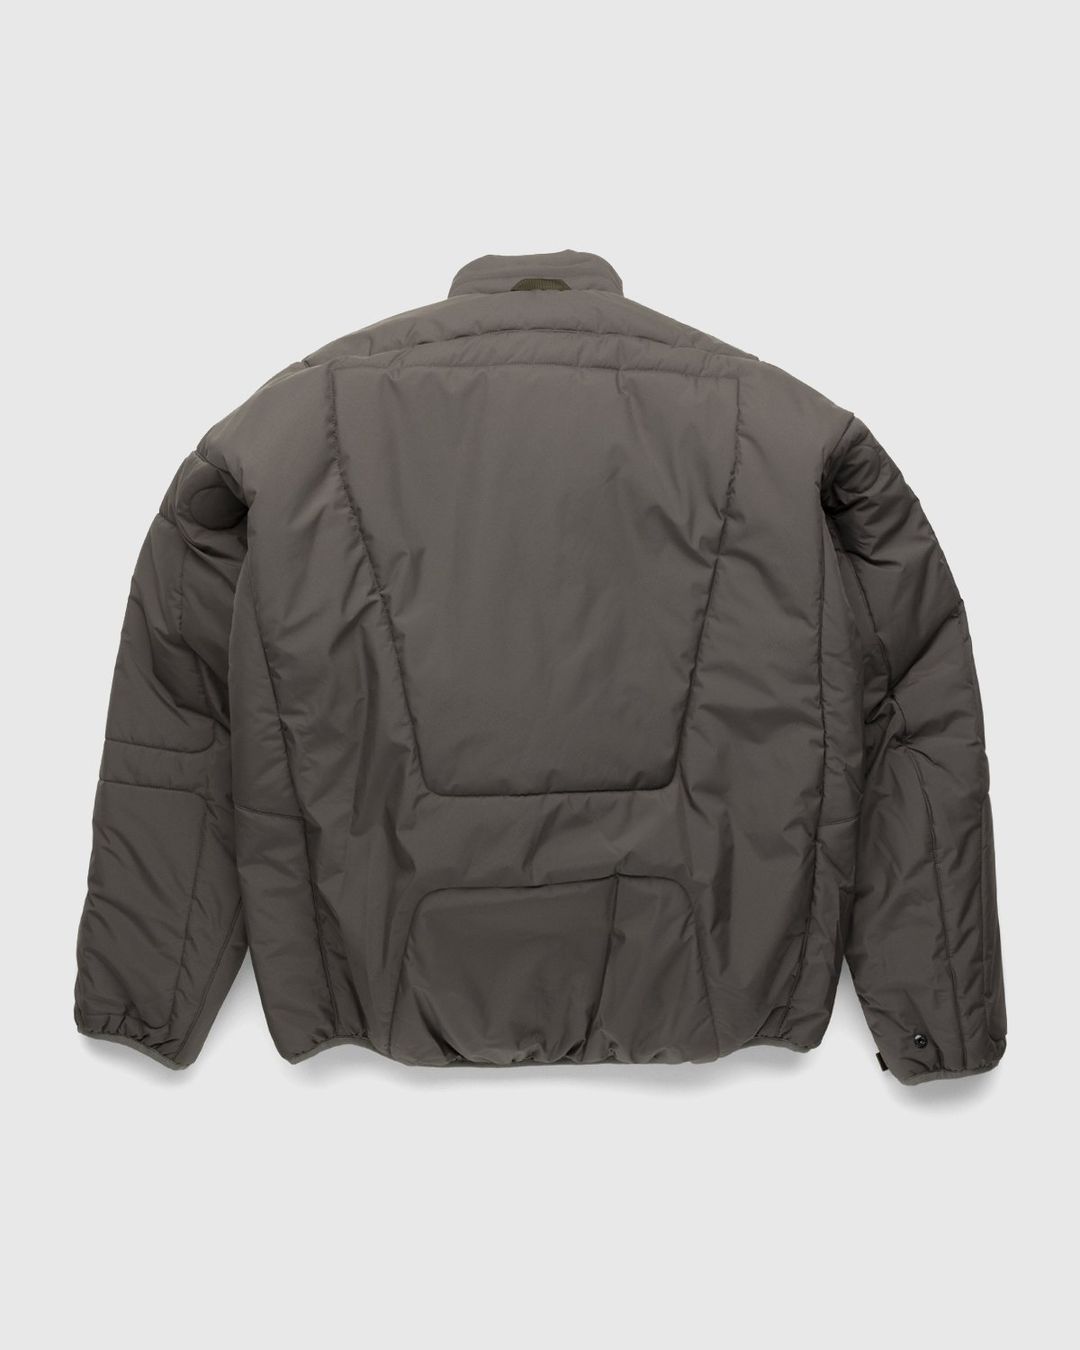 ACRONYM – J91-WS Jacket Grey | Highsnobiety Shop